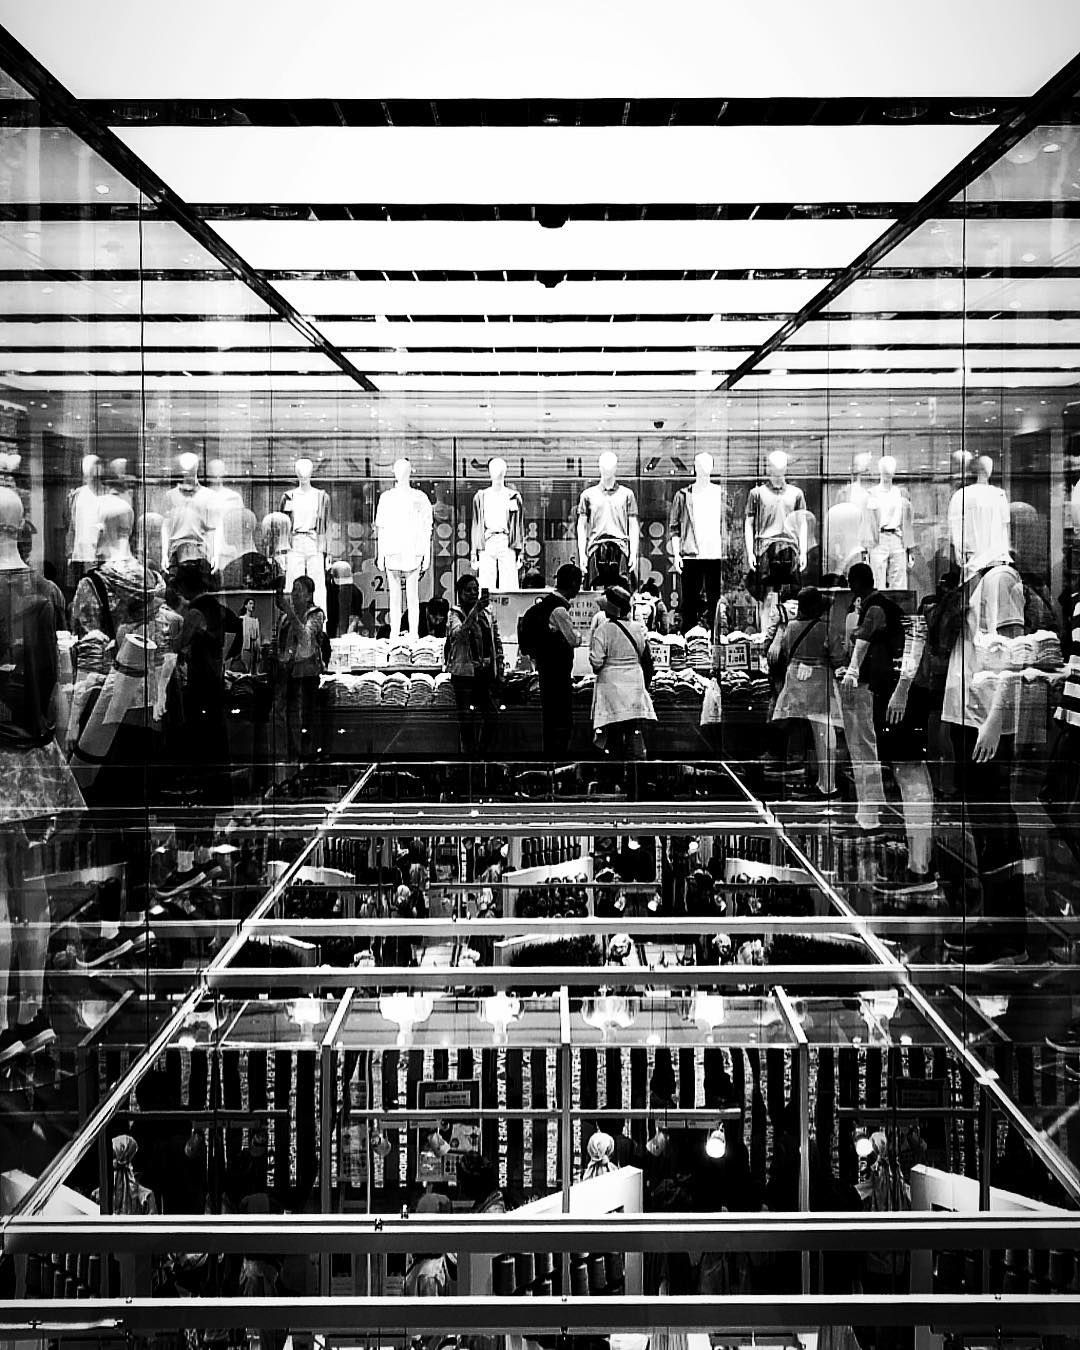 Stylish Uniqlo shop in Ginza, Tokyo...#uniqlo @uniqlo @uniqlo_ginza #tokyo #ginza #fashion #style #fashionstyle #japan #interiordesign #architecturephotography #glass #blackandwhite #mirrorglaze #travelgram #travelphotography #blackandwhitephotography #blackandwhite_art #contrast #fashiondesign #fashiondesigner